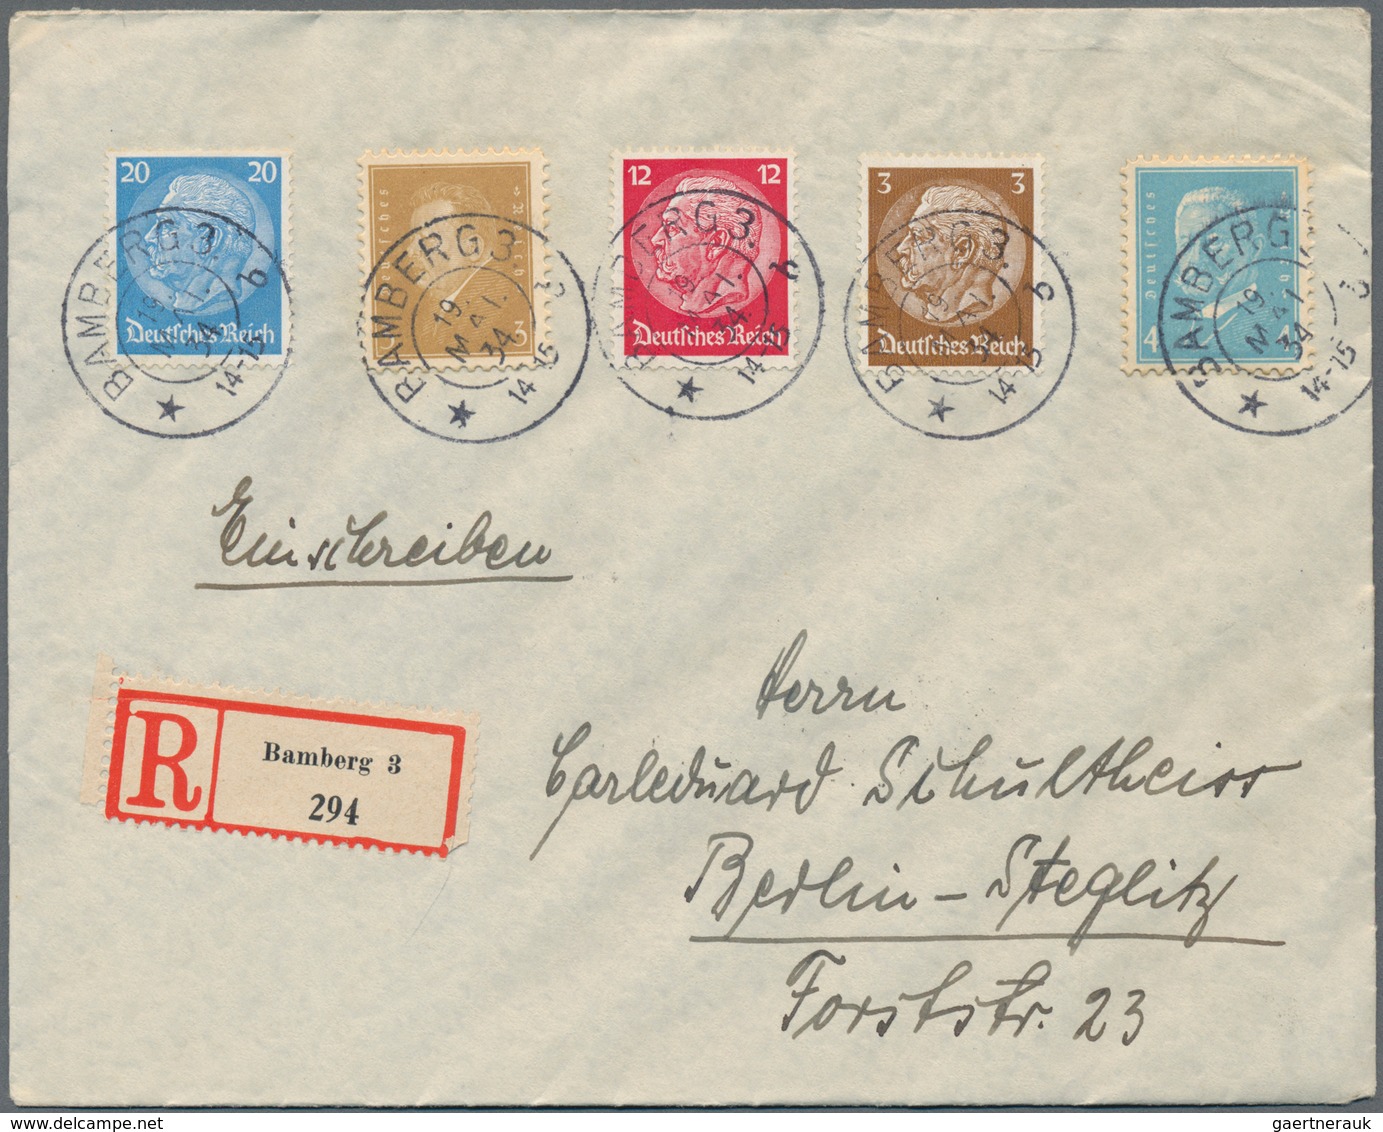 Deutsches Reich - Weimar: 1923/1932, vielseitige Partie von fast 300 Briefen, Karten und Ganzsachen,